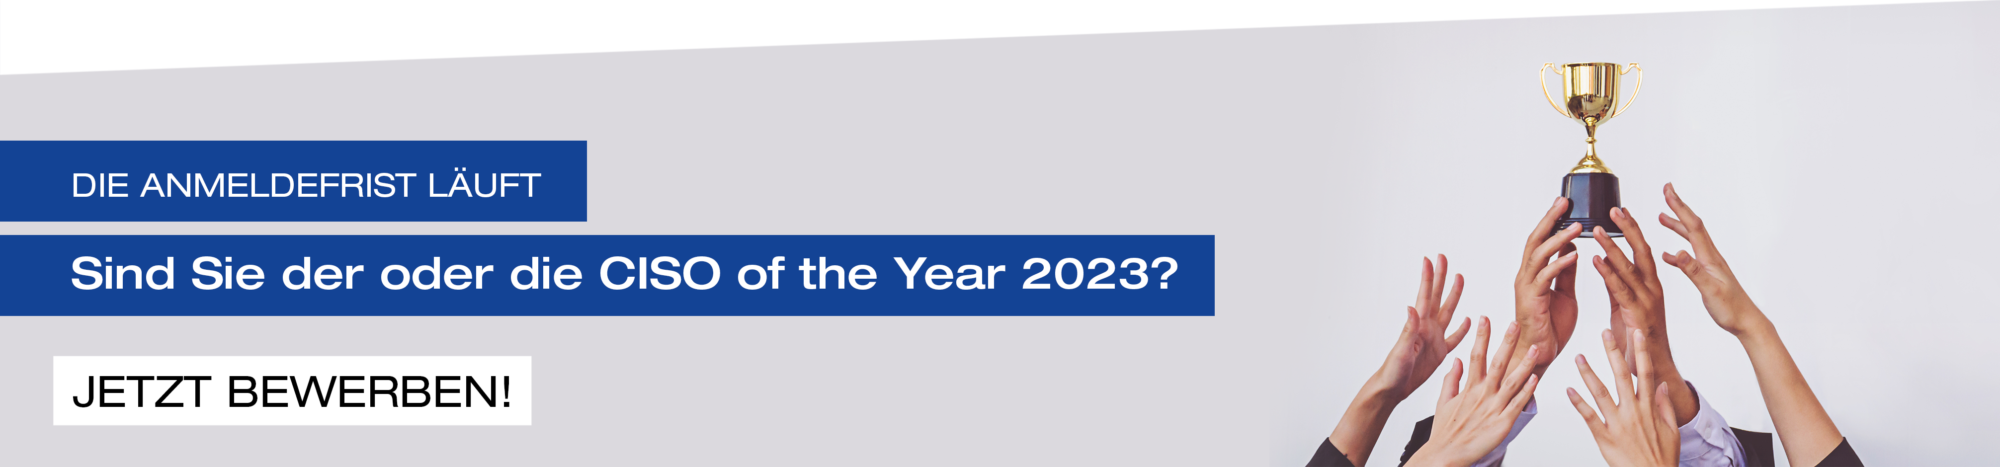 Verschiedene Hände strecken sich, um Pokal zu ereichen. Text: CISO of the Year 2023 - Jetzt bewerben!